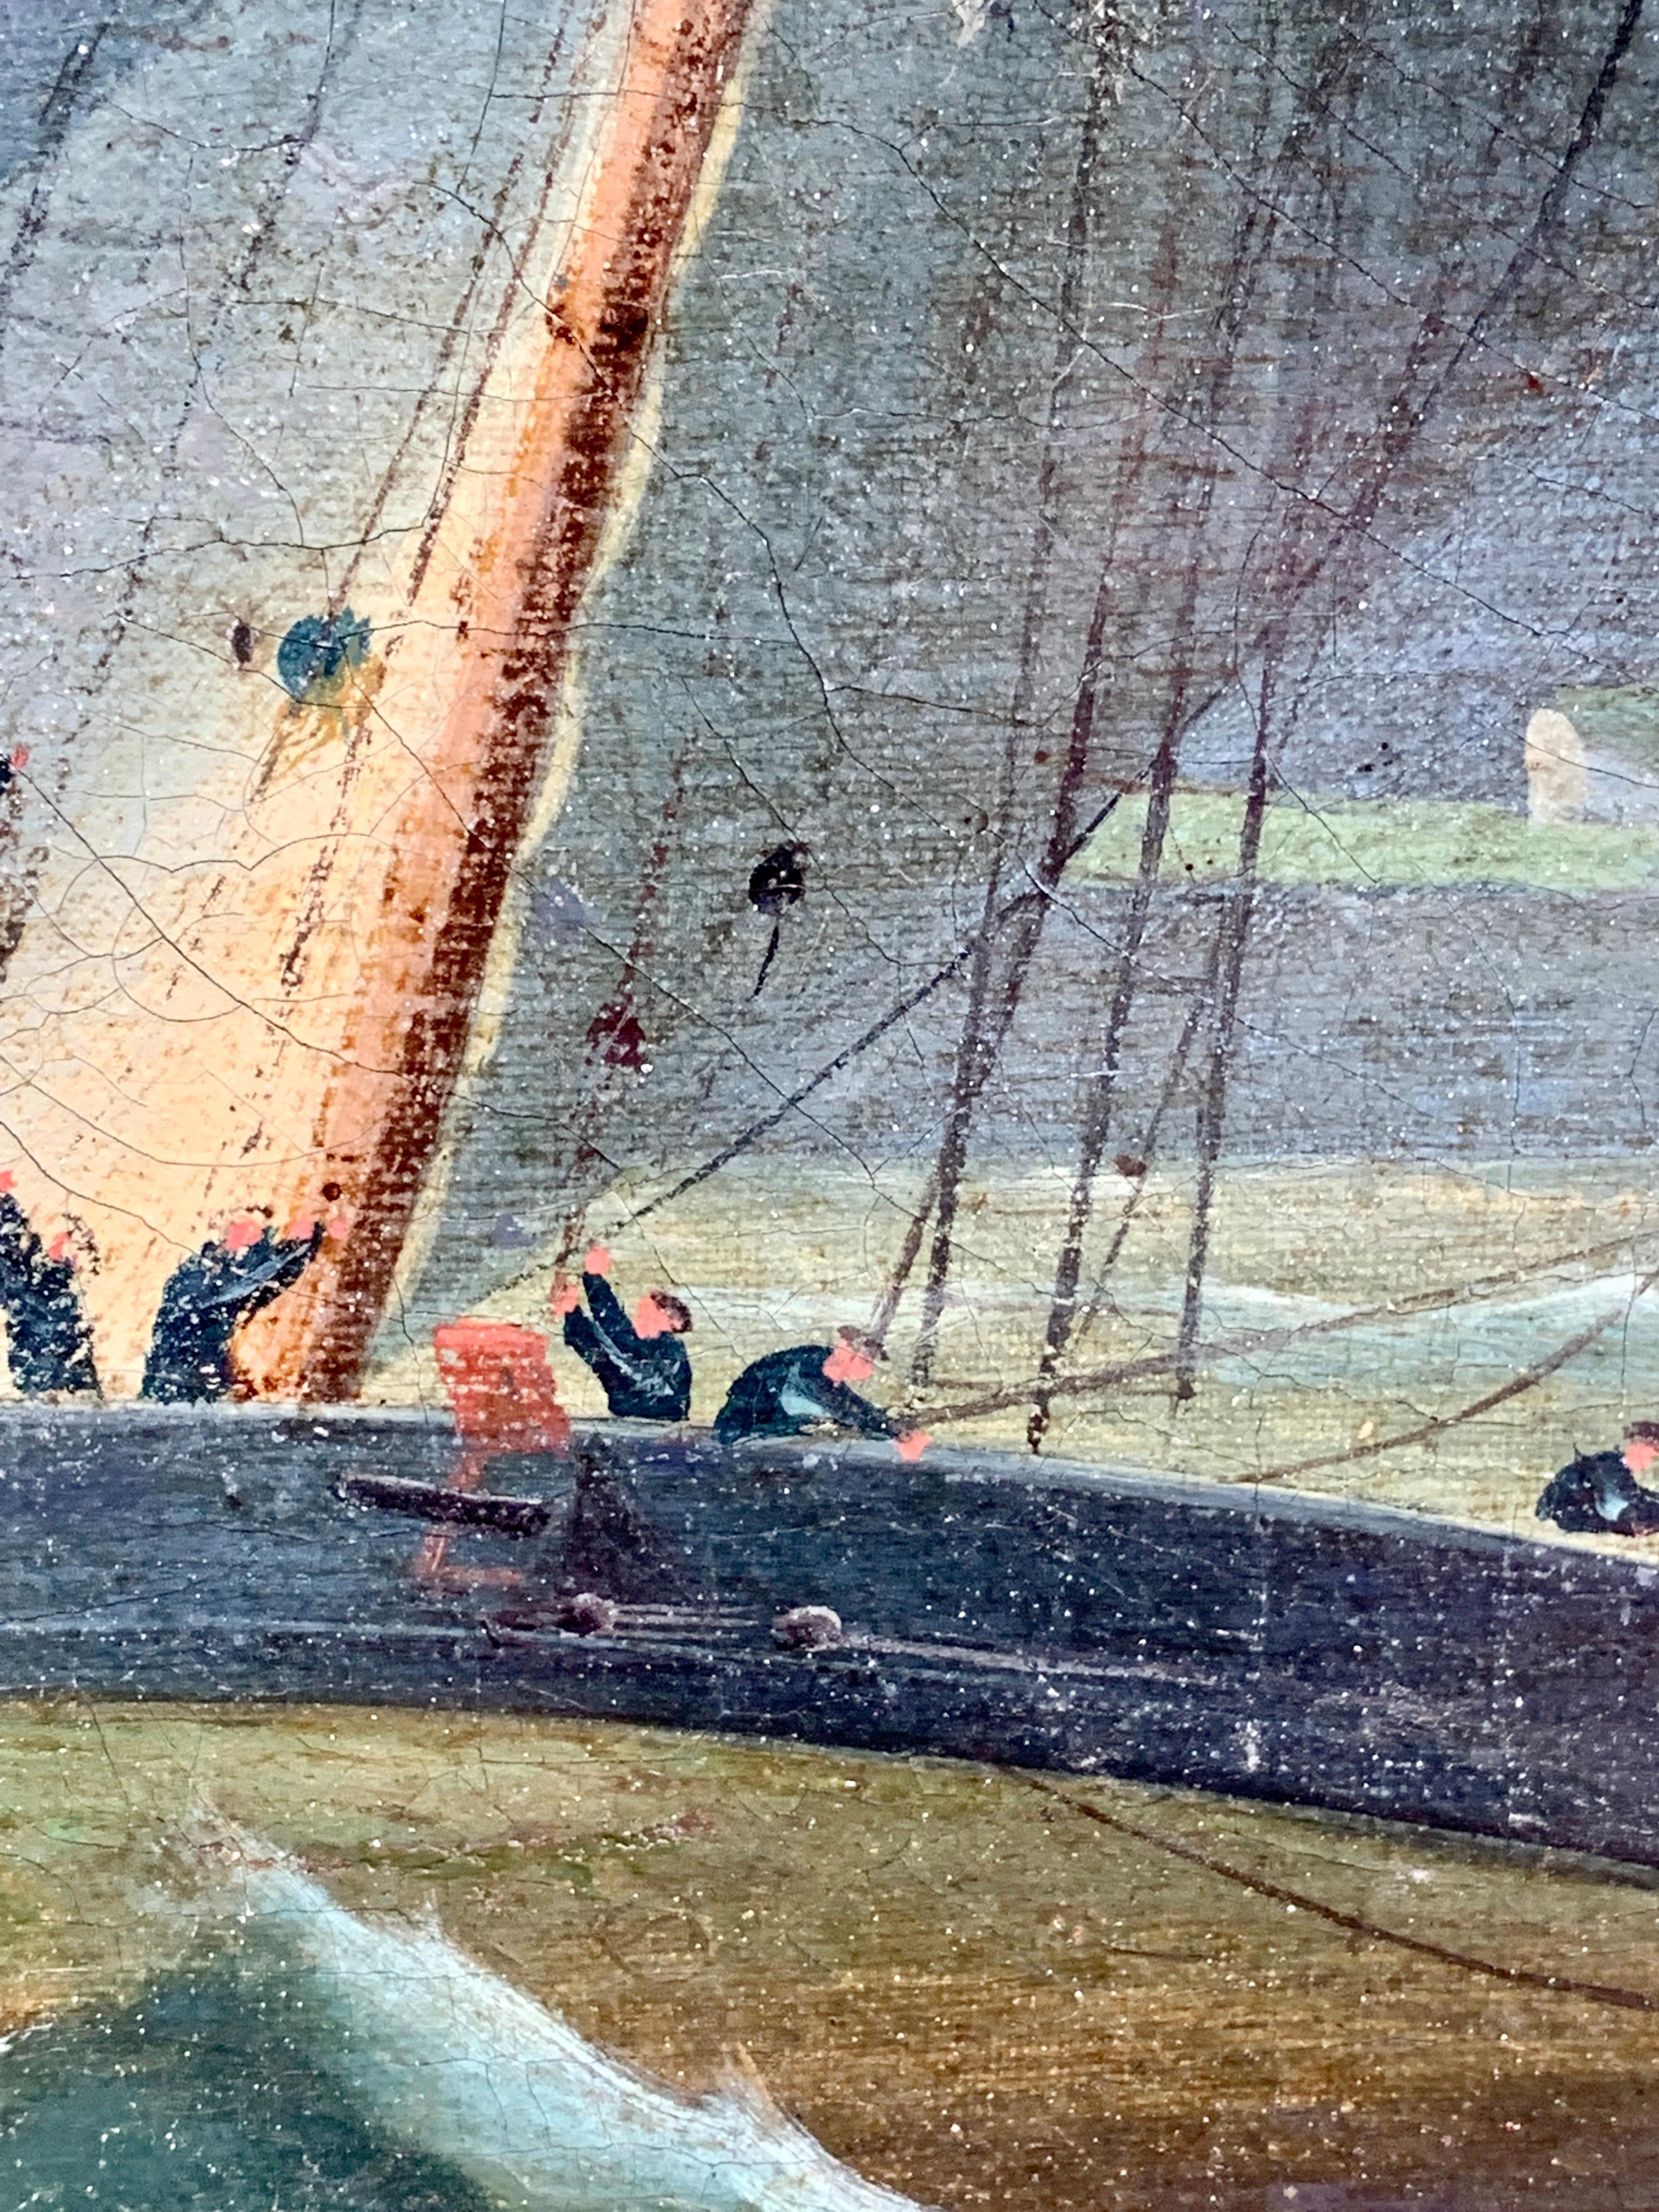 Scène victorienne anglaise bien peinte représentant deux bateaux en train de se battre la nuit, au large de la côte anglaise.

Bien que signé, on sait peu de choses sur le peintre. Le style de la pièce est typiquement anglais et la scène ressemble à